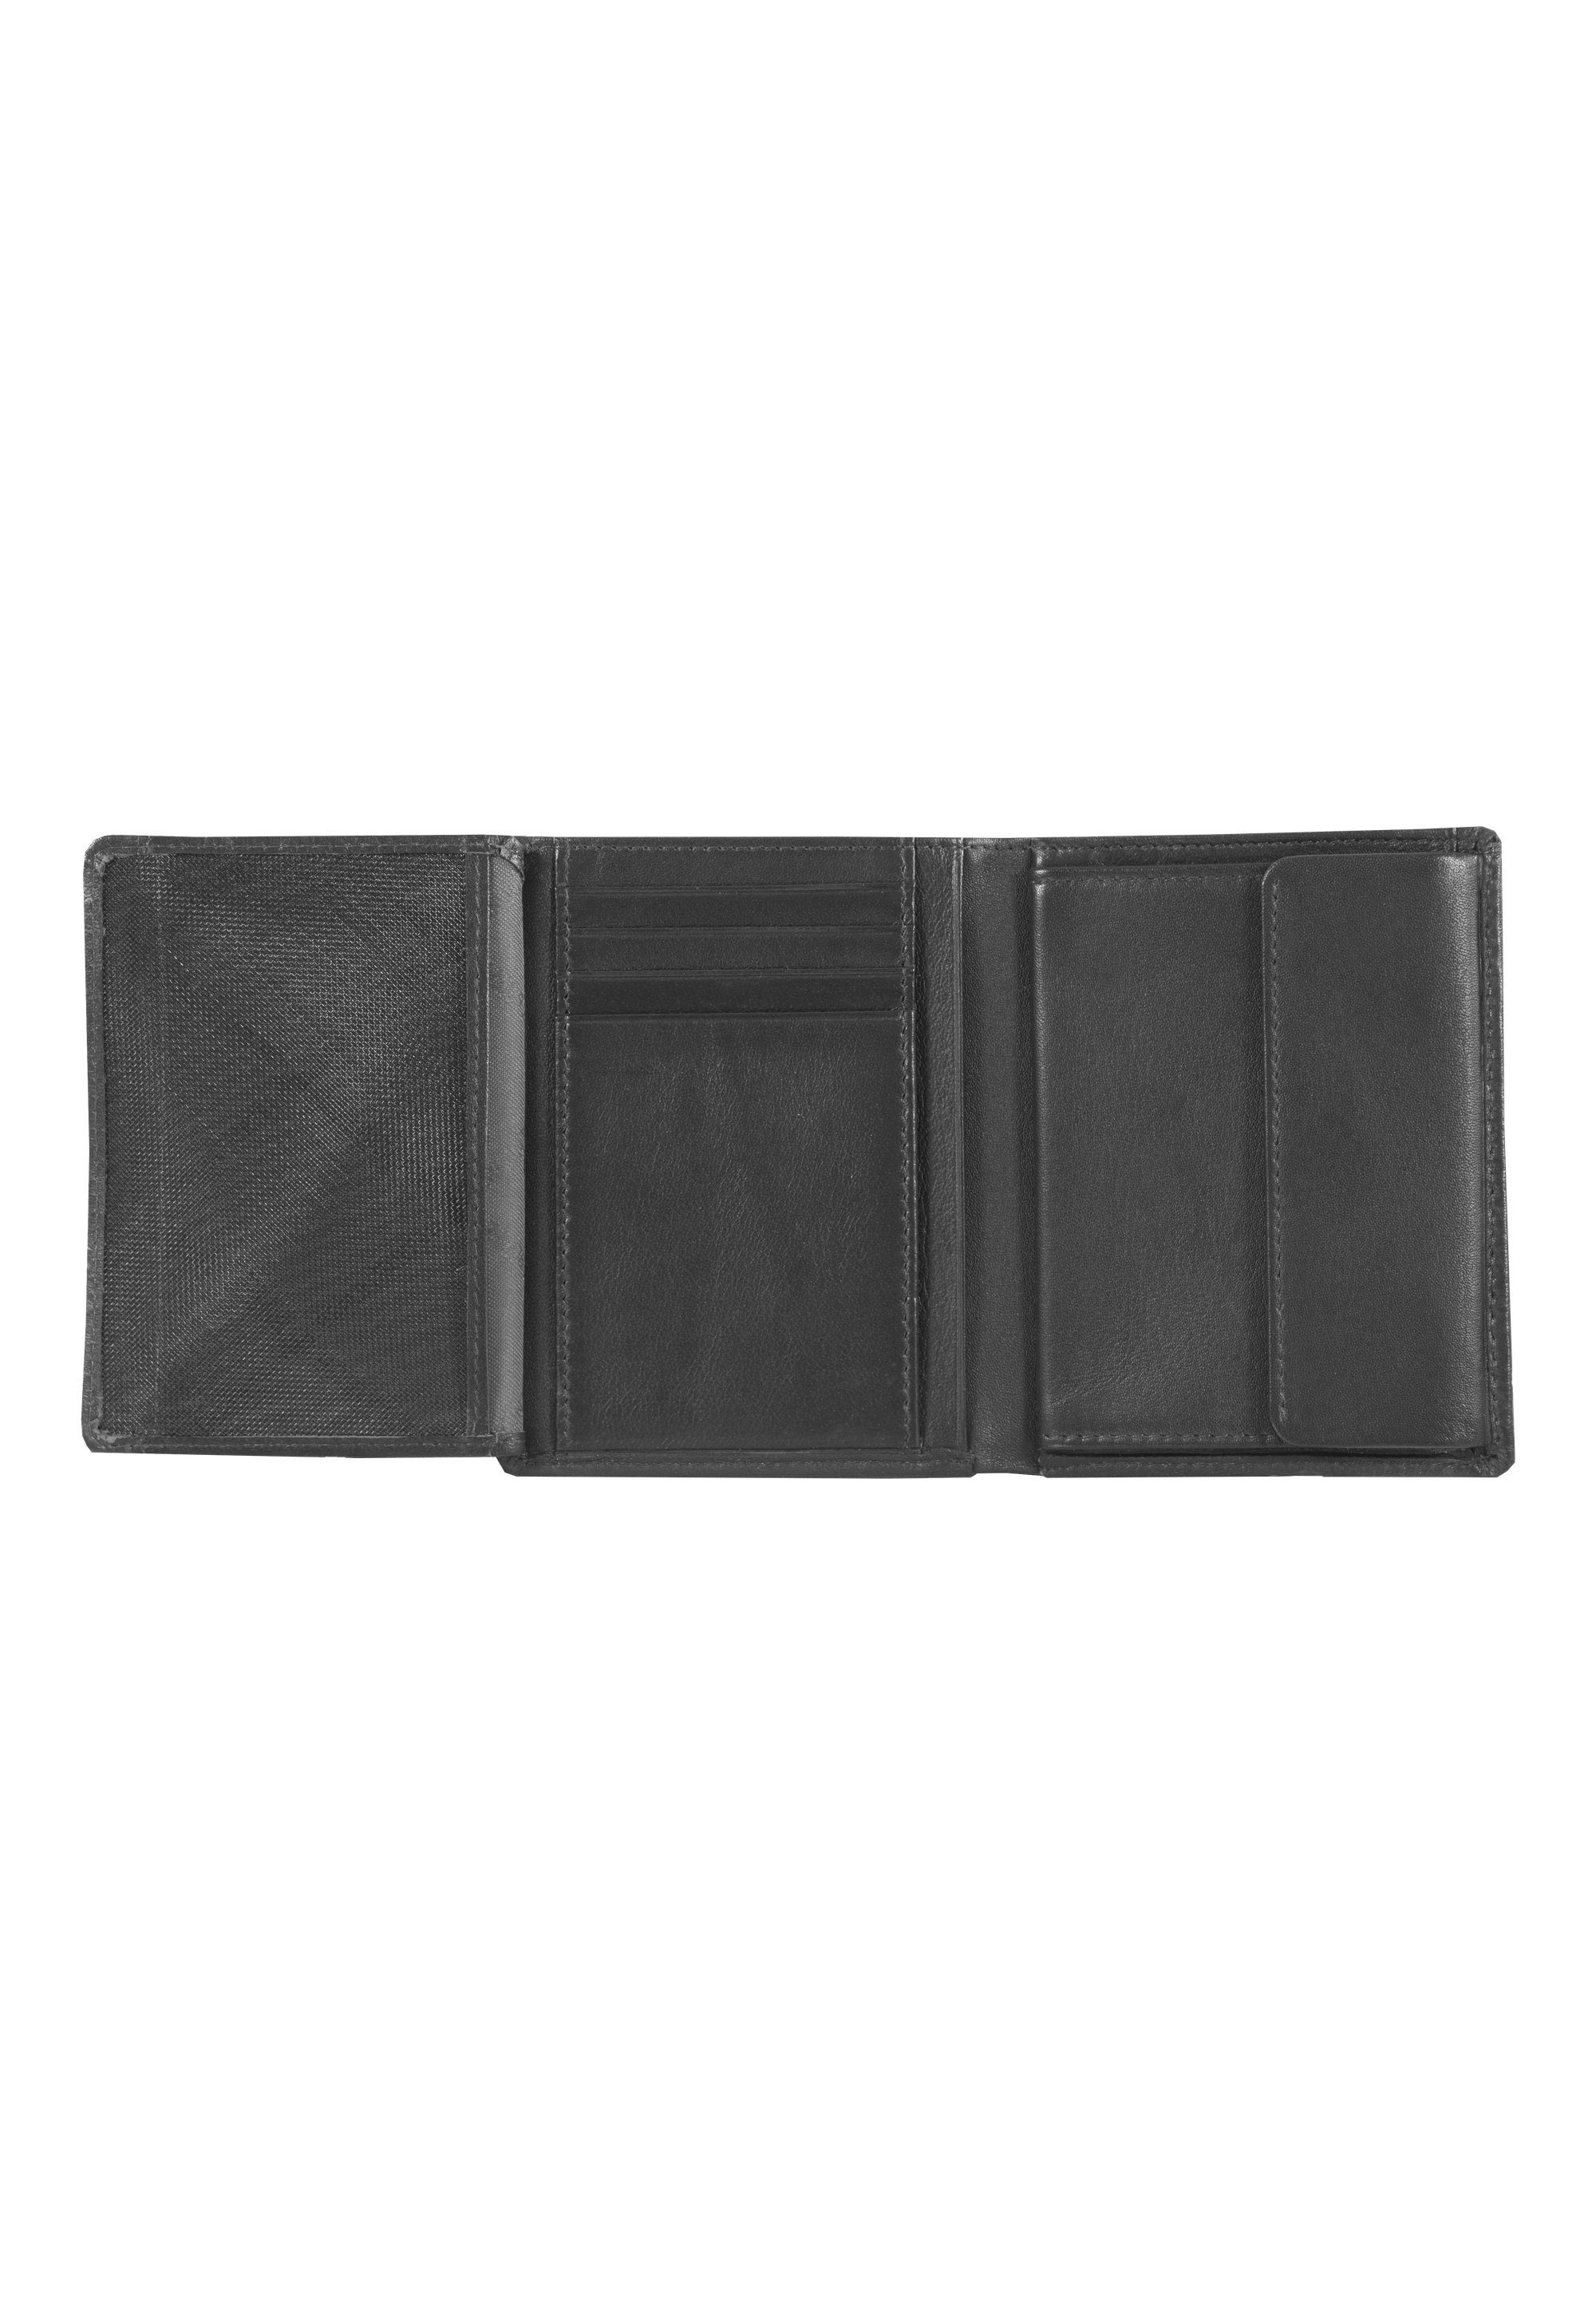 HENRY, im schwarz Braun Hochkantformat Brieftasche Büffel